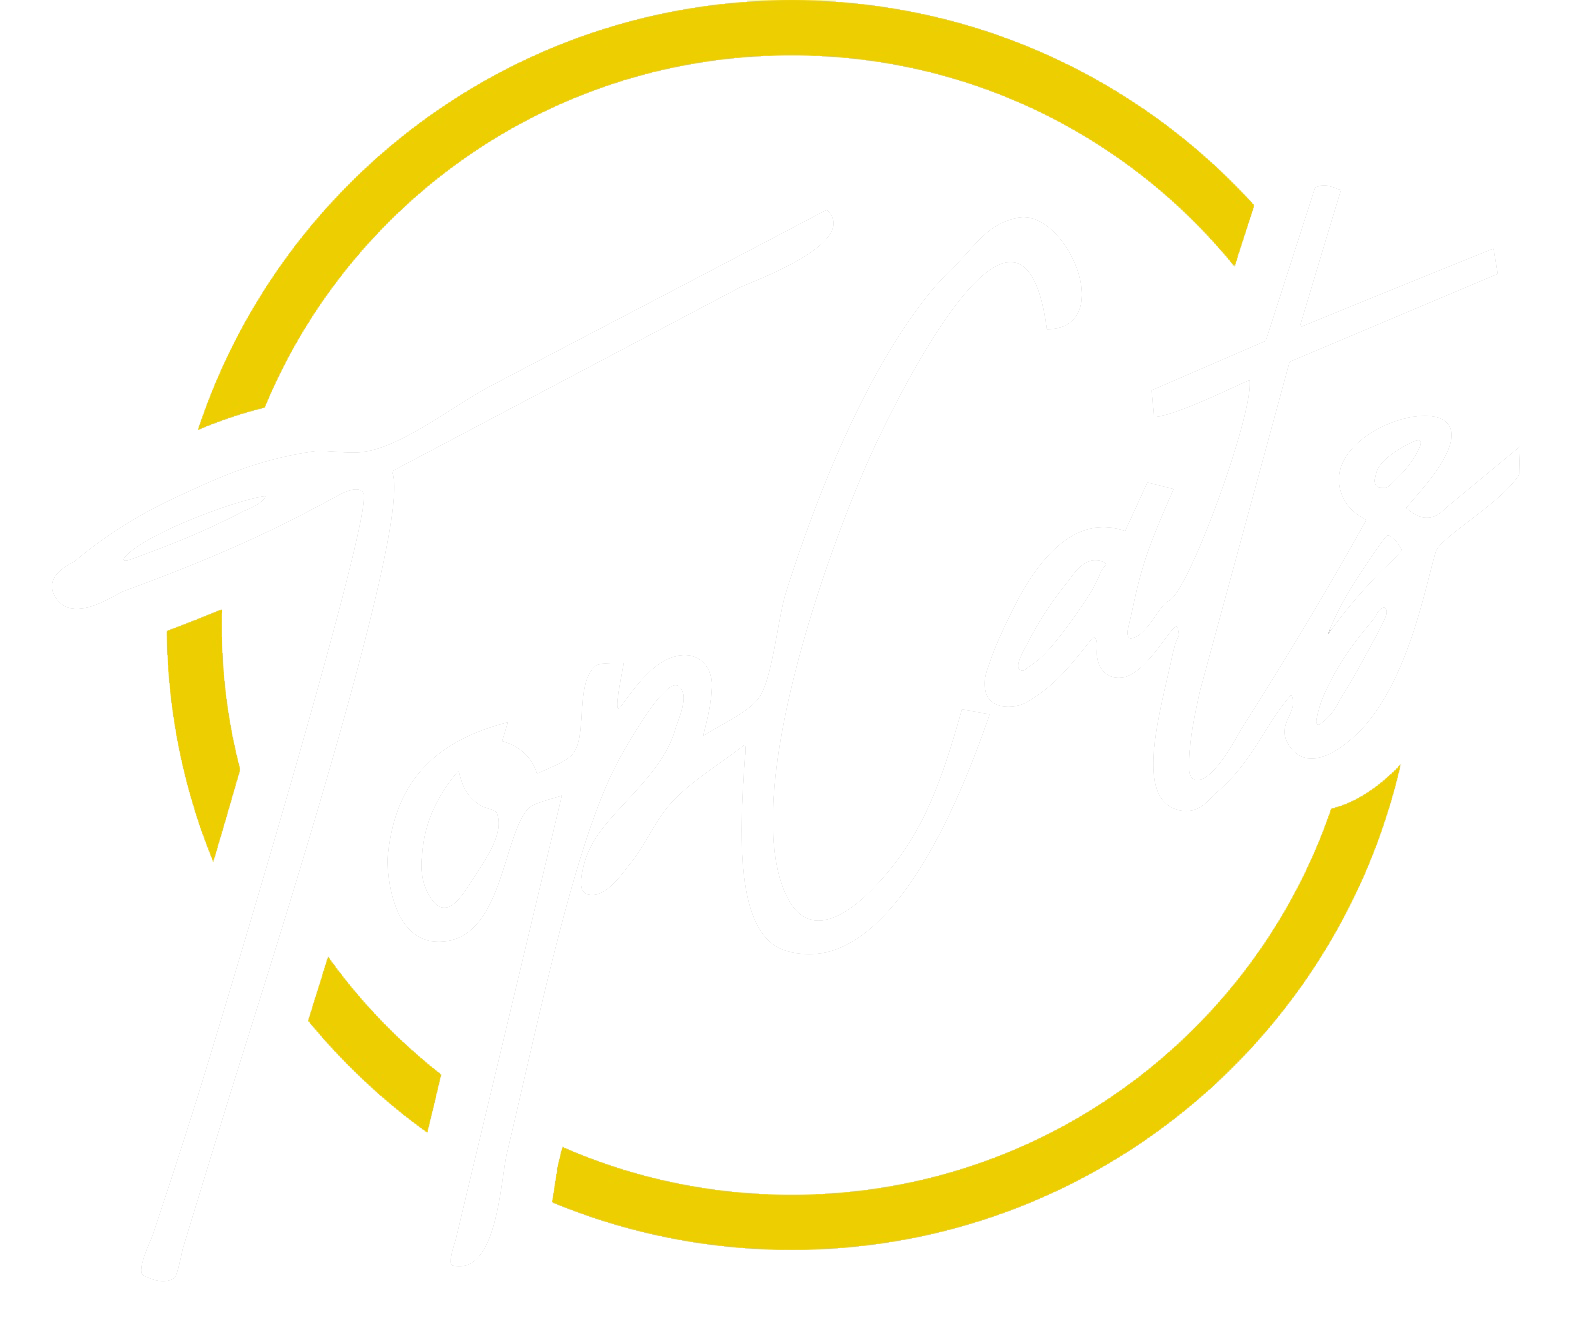 Top Cats Cincy